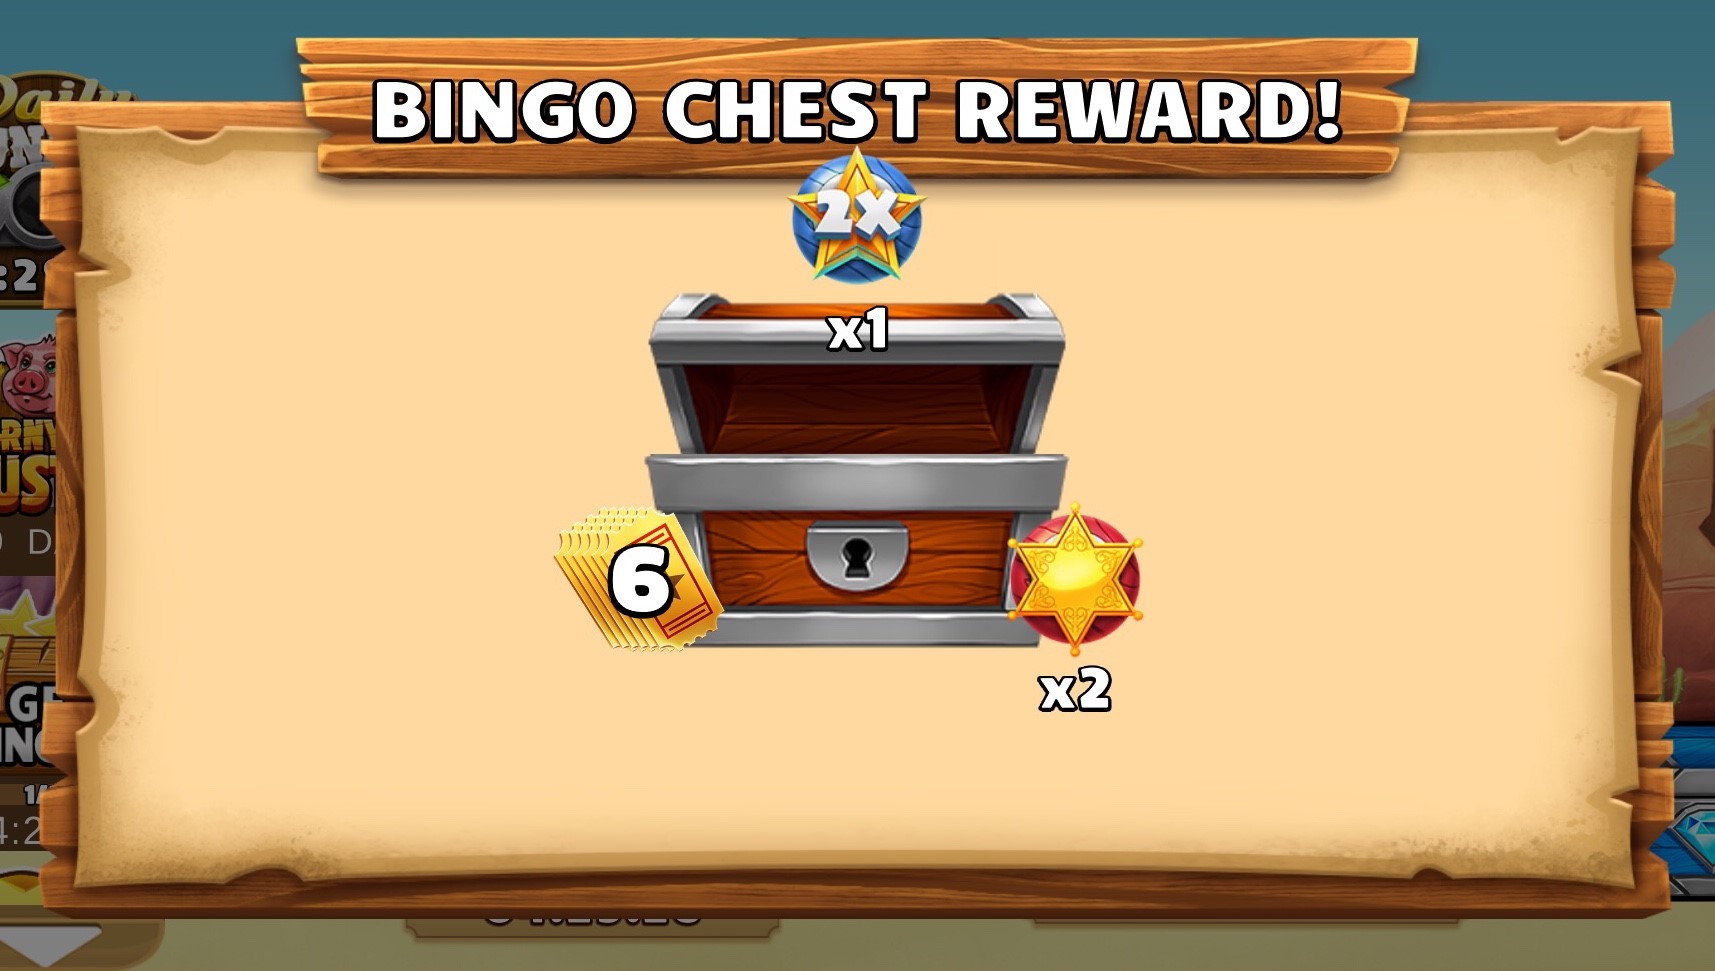 BSD_freebies-bingo-challenge-chest-reward.jpg